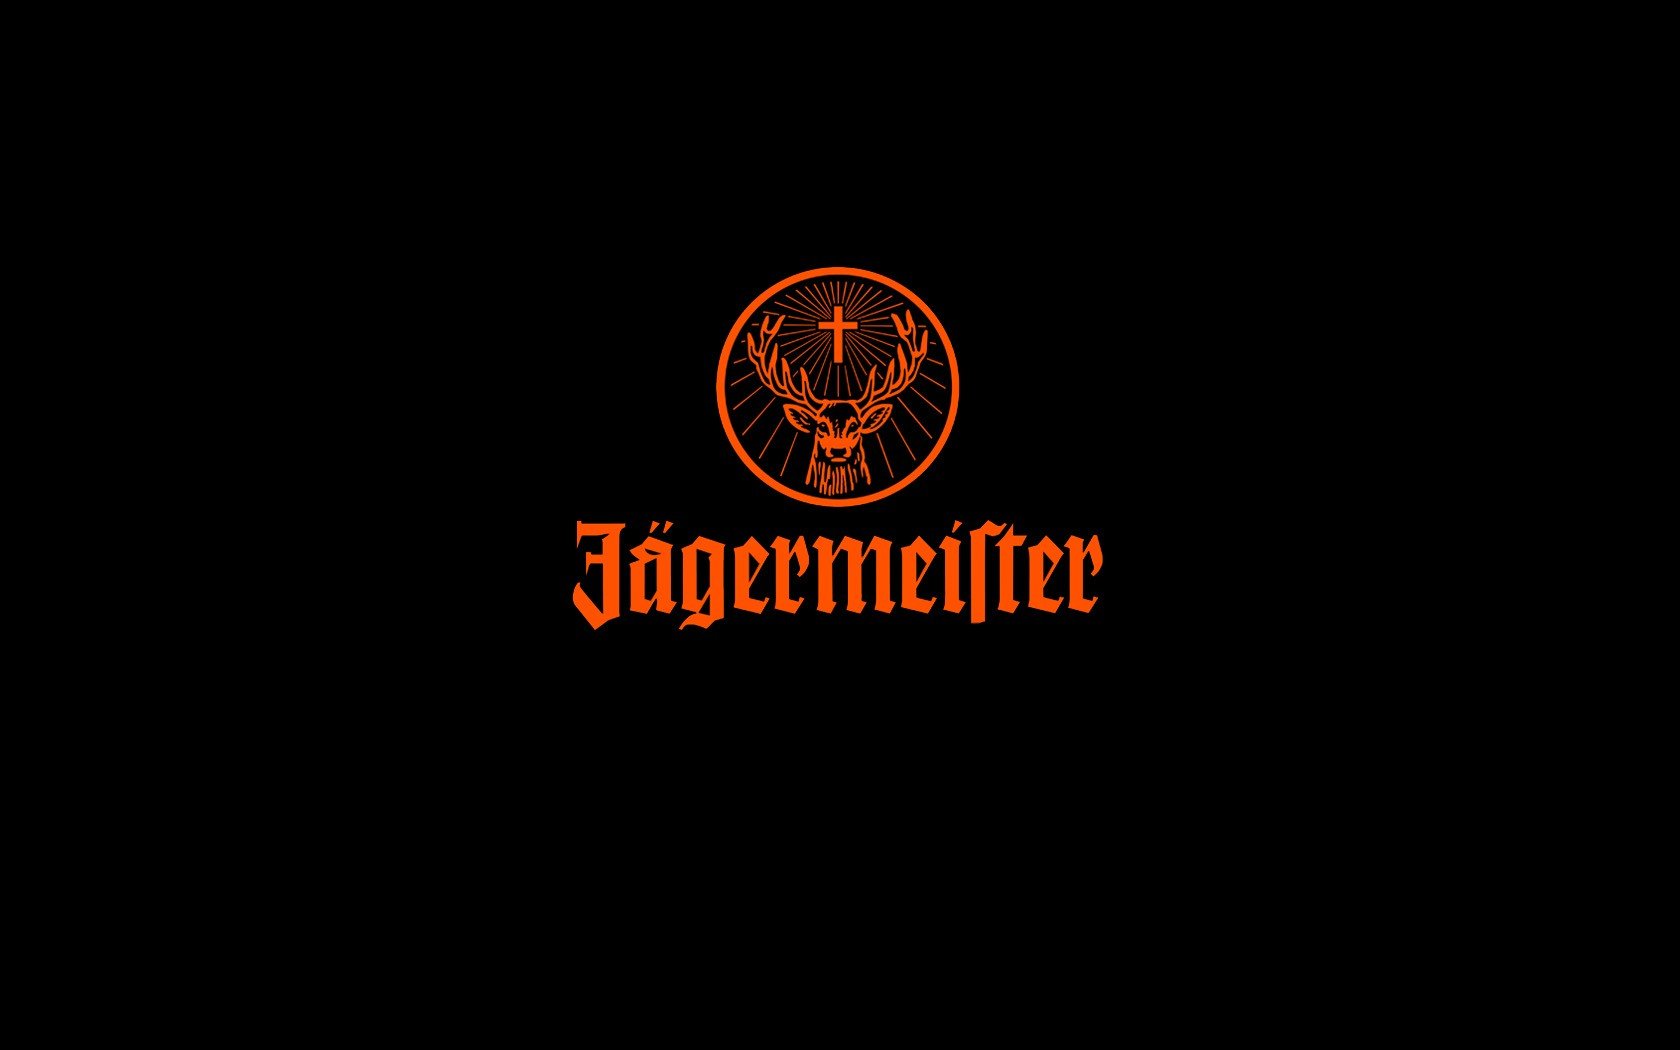 Jagermeister, Logo Wallpaper